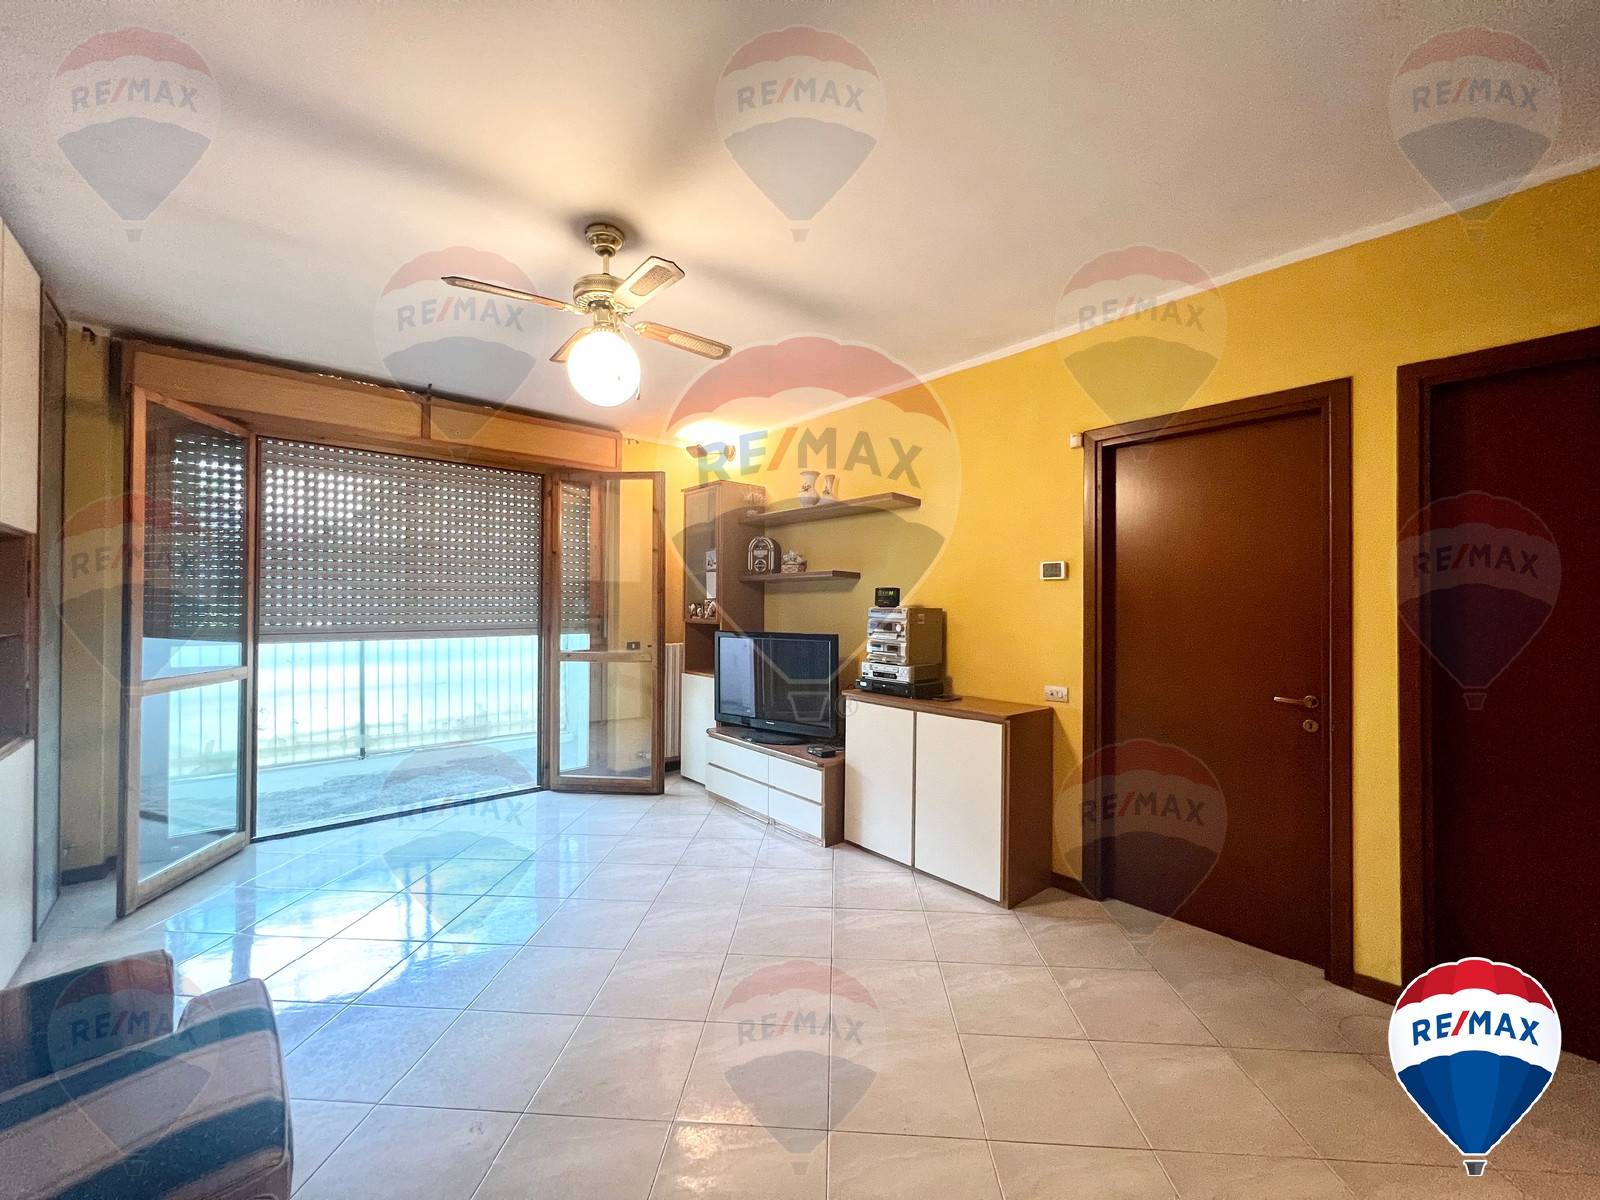 Appartamento in vendita a Lacchiarella, 3 locali, prezzo € 207.000 | CambioCasa.it